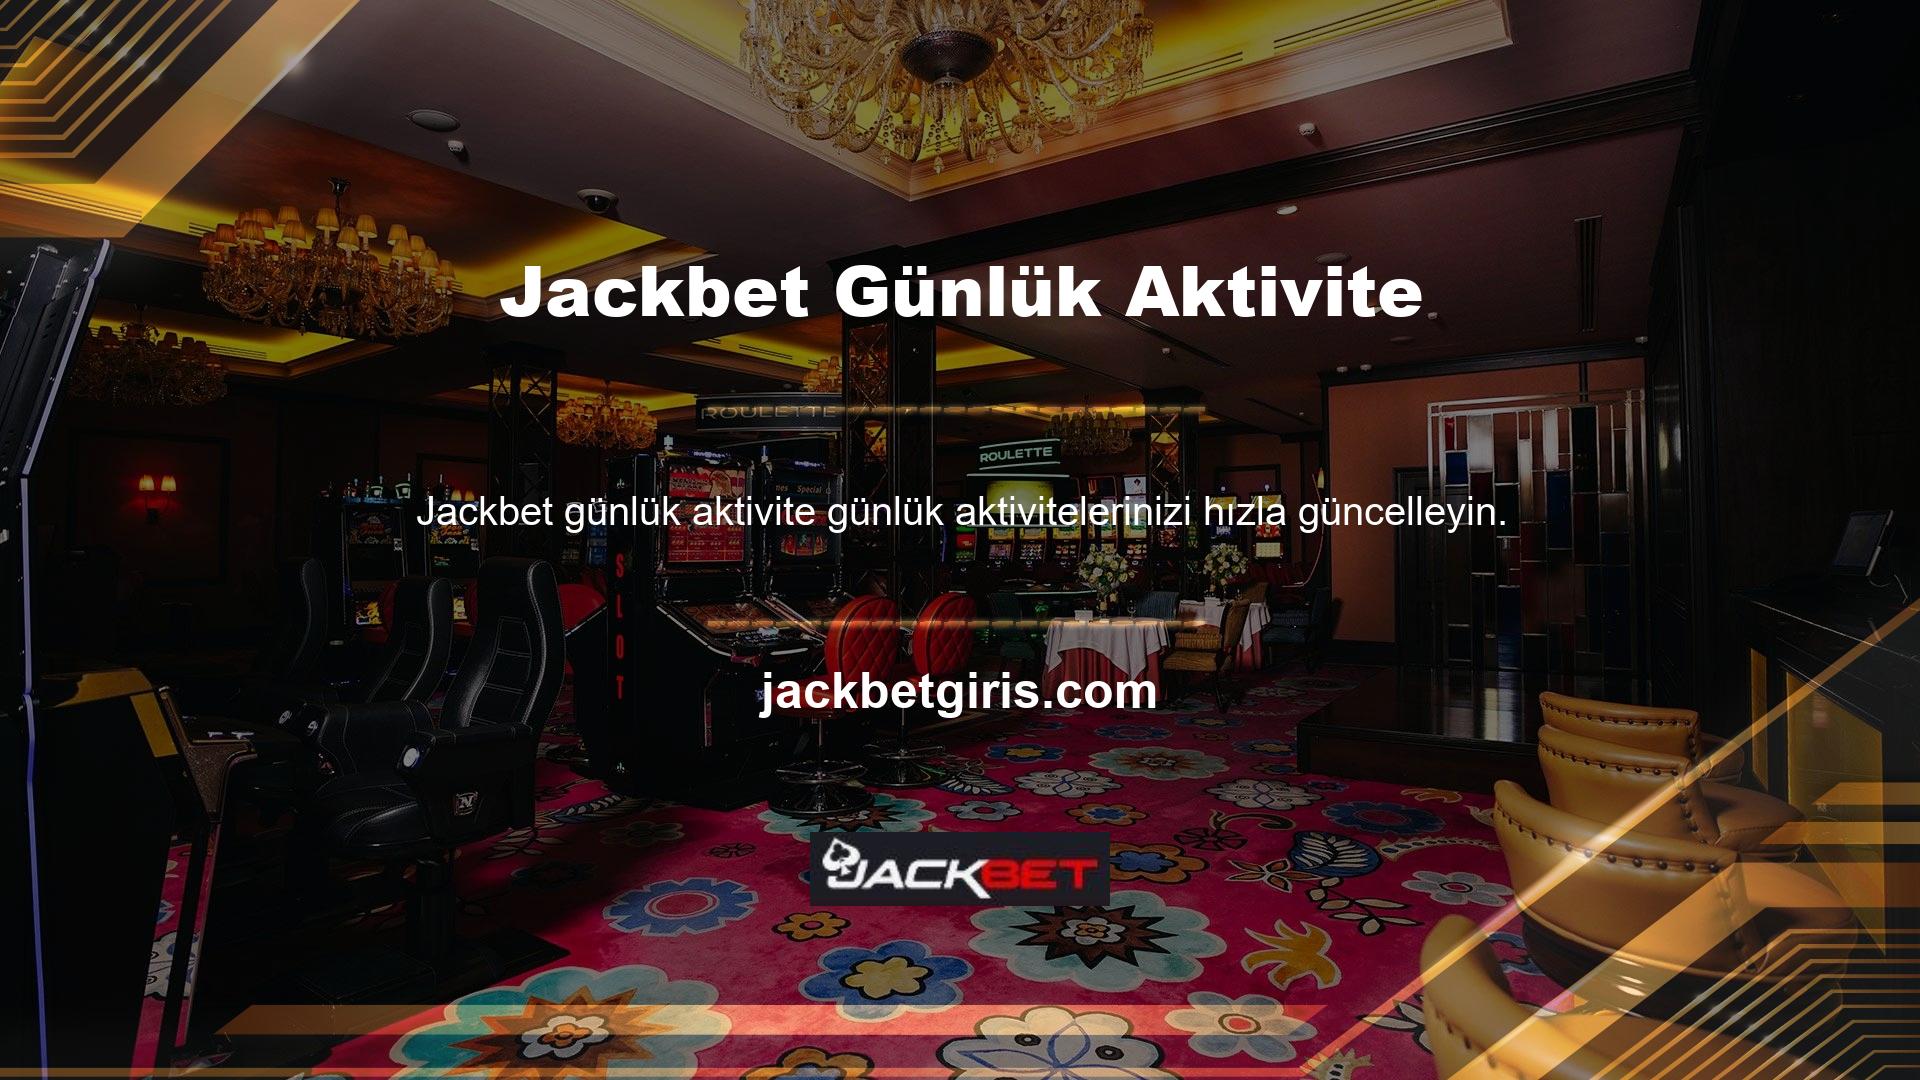 Bu hizmeti sunan bir web sitesini seçtiğinizde anında Jackbet canlı desteğine bağlanacaksınız